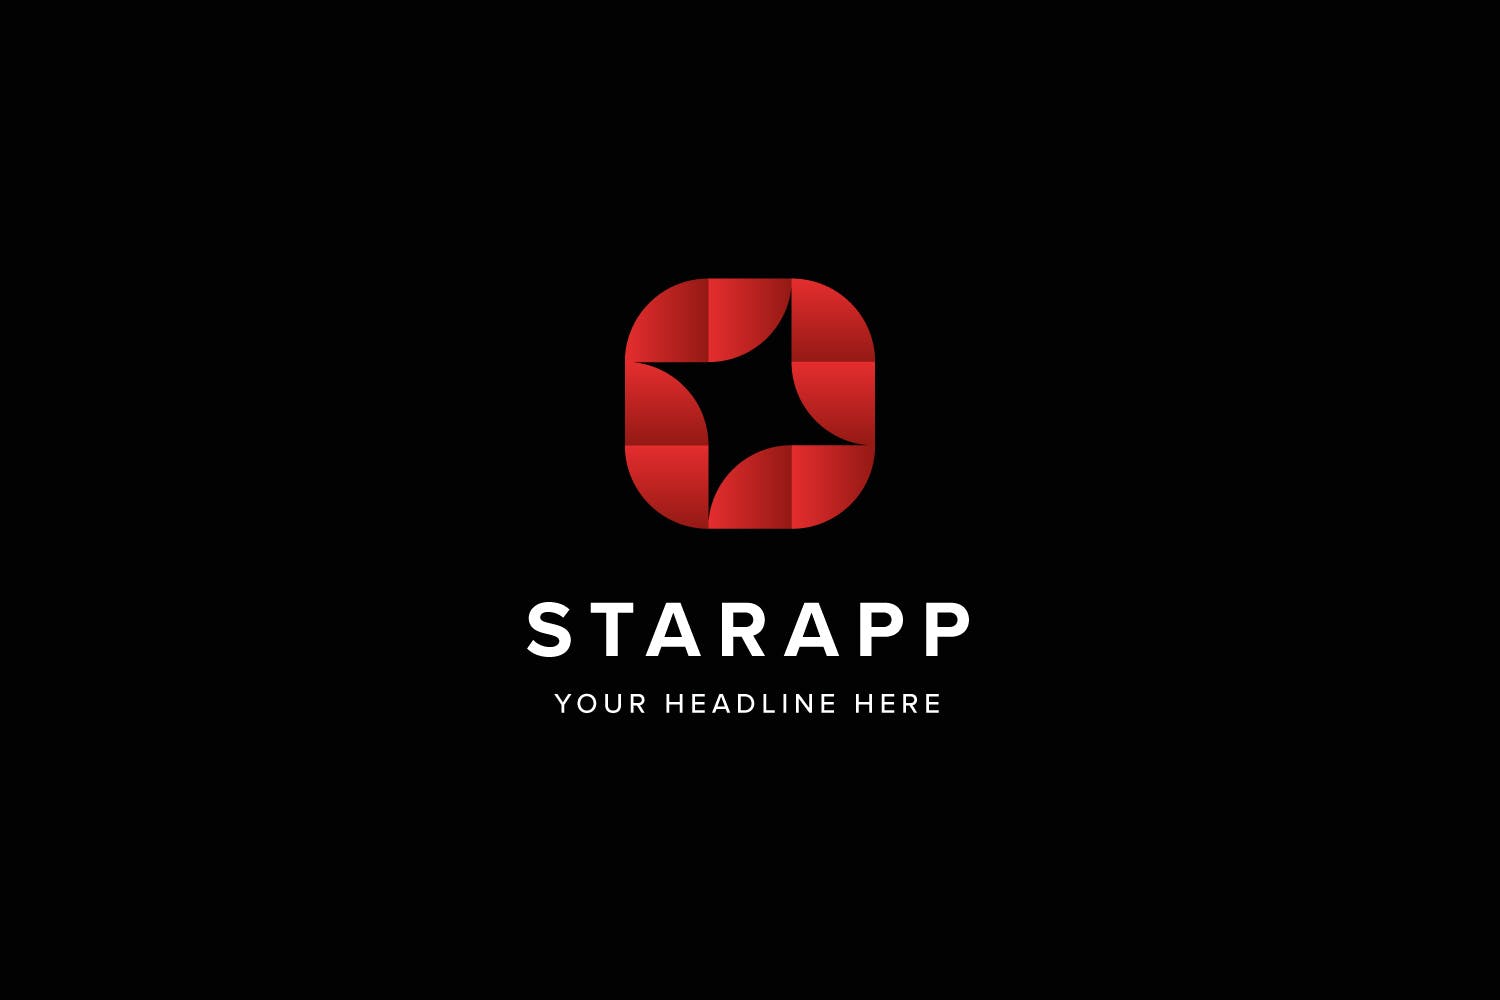 星级APP评选Logo标志设计模板素材 Star App Logo Template插图(1)